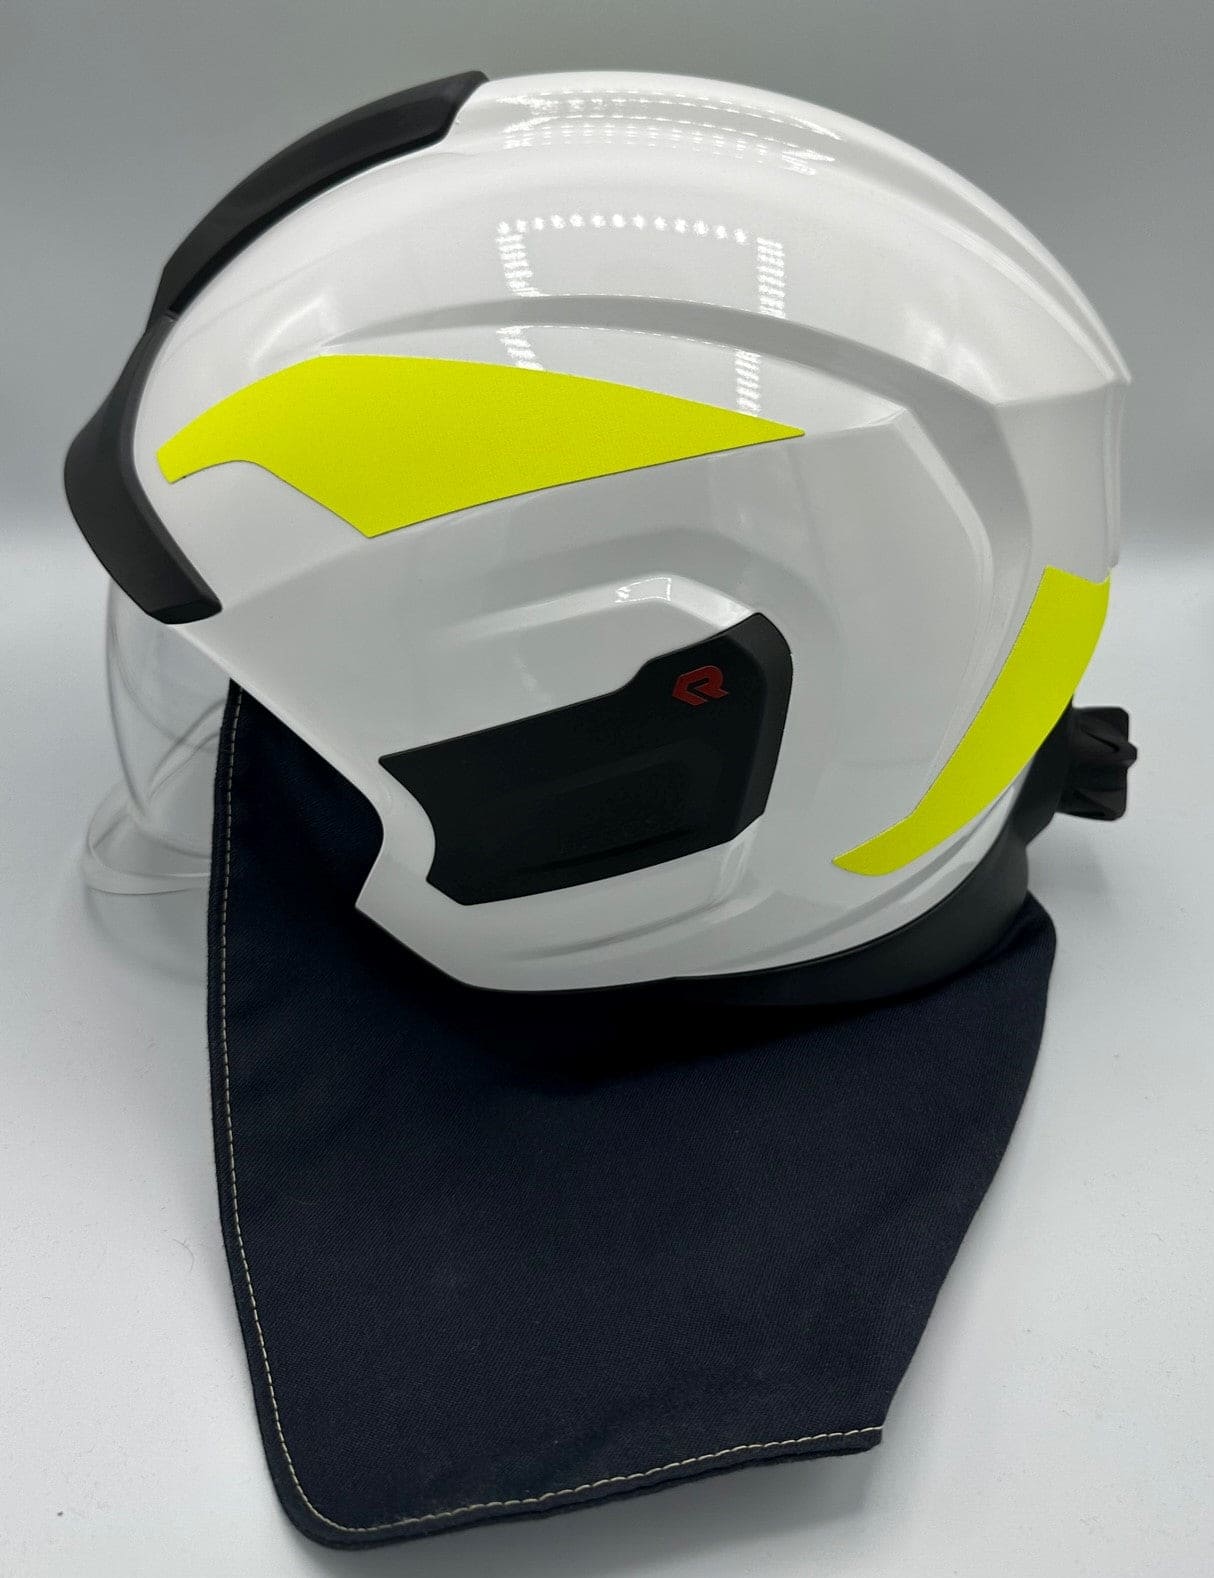 Rosenbauer HEROS Titan Pro Helmet, White Helmet